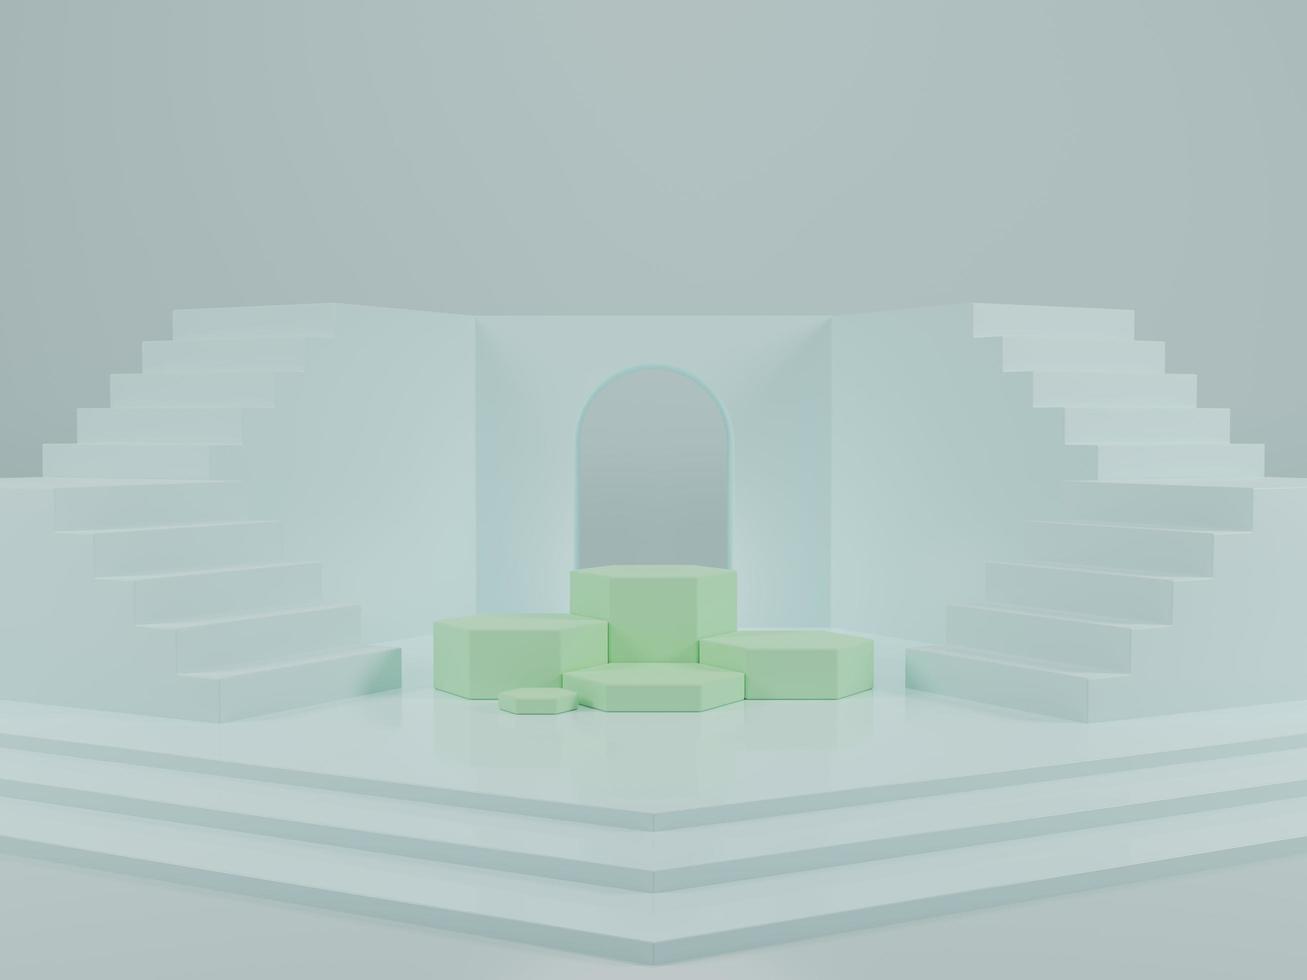 podio hexagonal con escaleras sobre fondo azul claro ilustración 3d foto